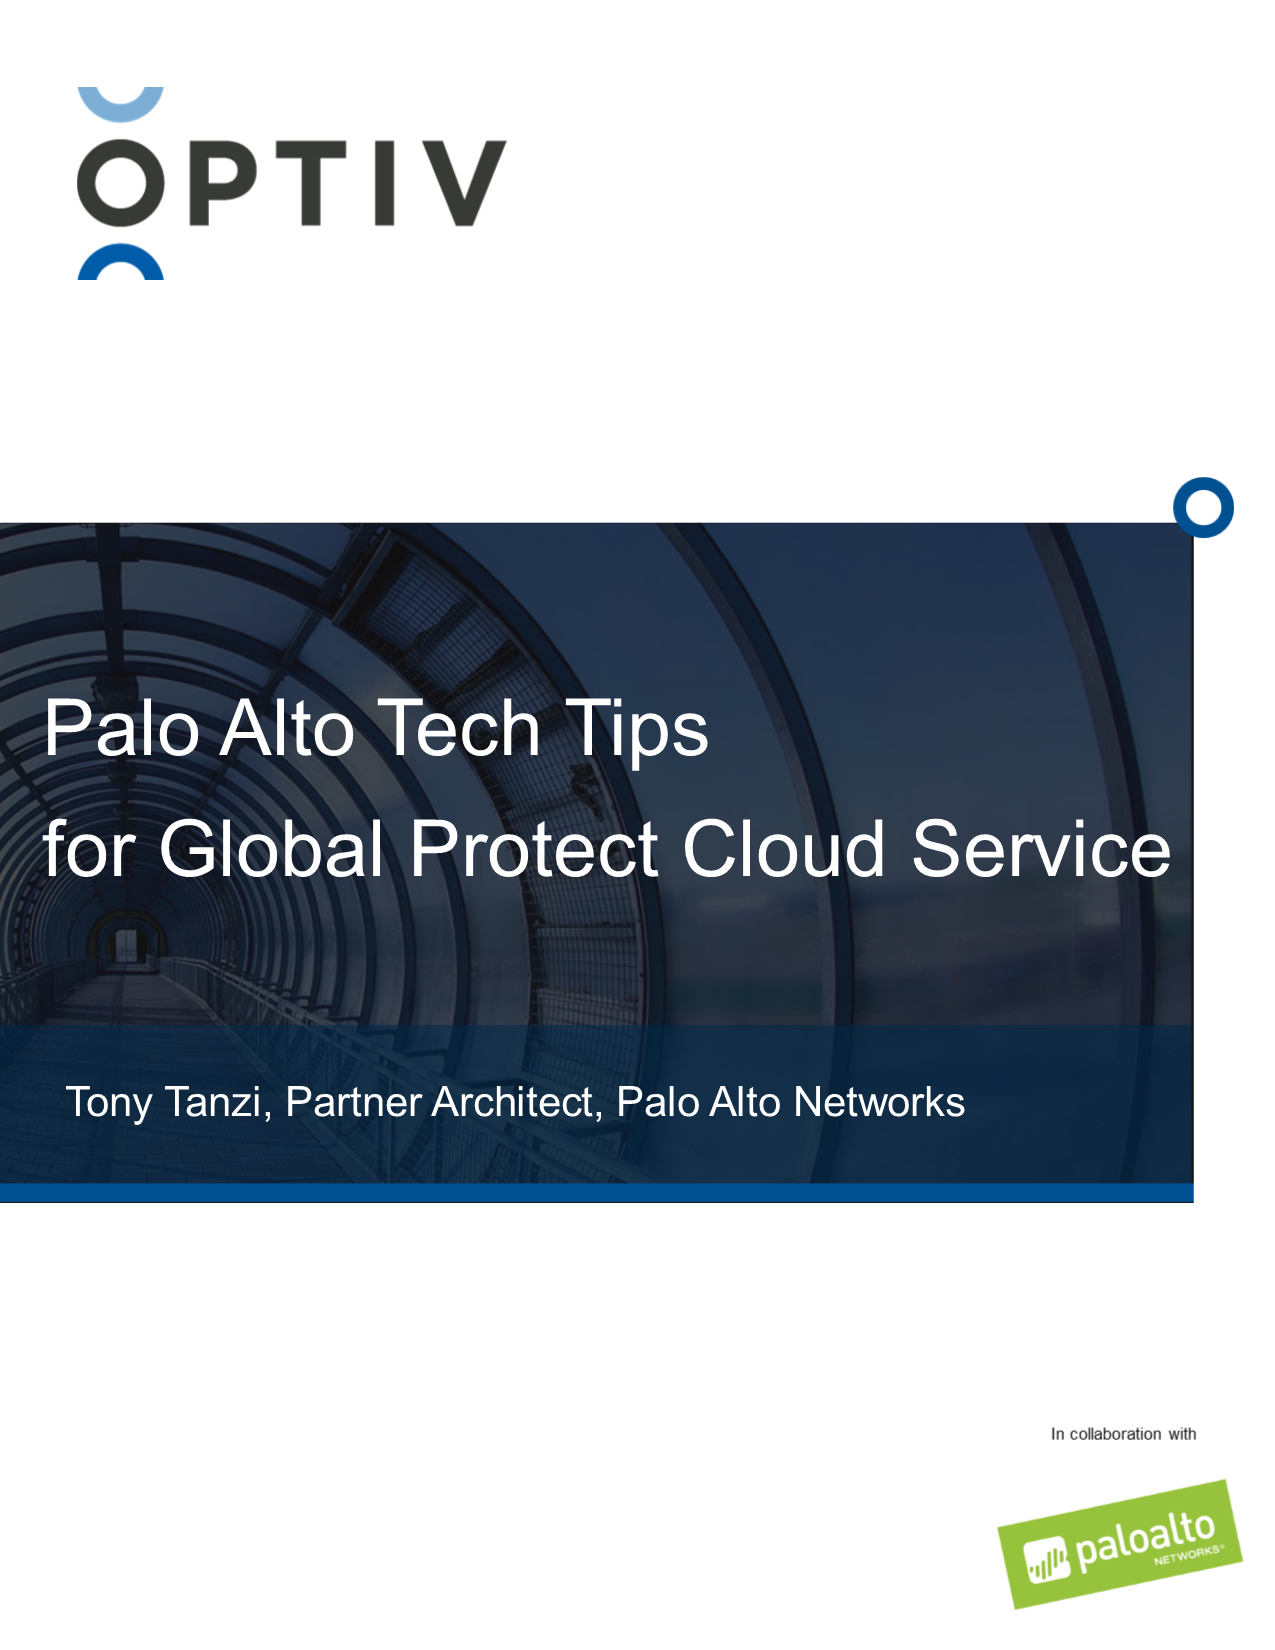 globalprotect cloud service